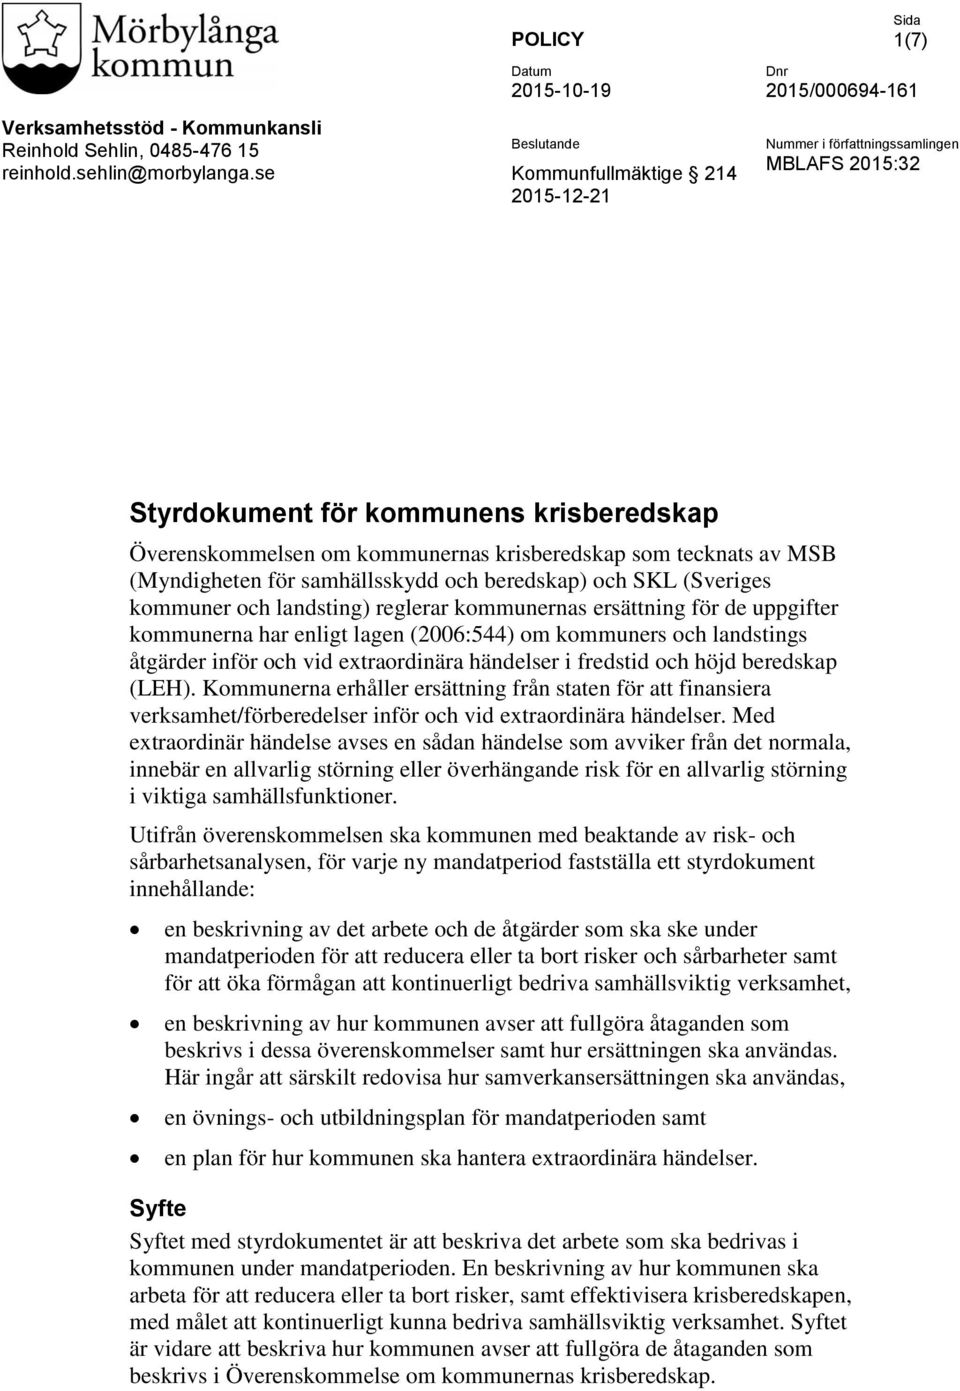 Överenskommelsen om kommunernas krisberedskap som tecknats av MSB (Myndigheten för samhällsskydd och beredskap) och SKL (Sveriges kommuner och landsting) reglerar kommunernas ersättning för de